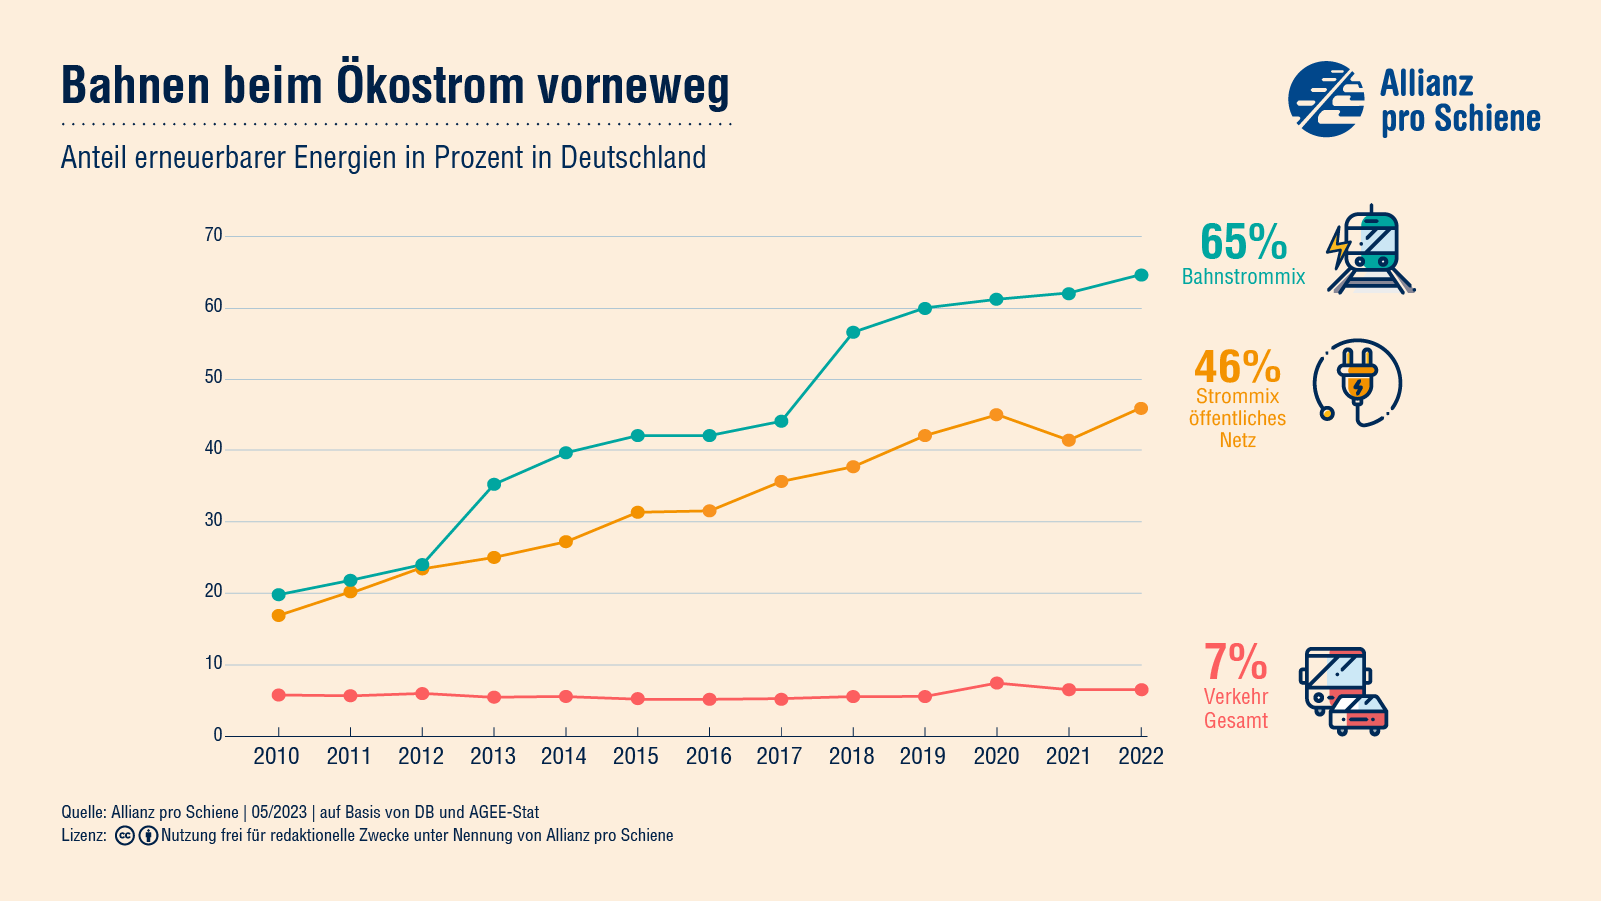 Beim Anteil erneuerbaren Energien liegt der Bahnstrommix mit 62% über dem deutschen Strommix von 41% und sehr weit über dem Anteil erneuerbaren Energien vom gesamten deutschen Verkehr